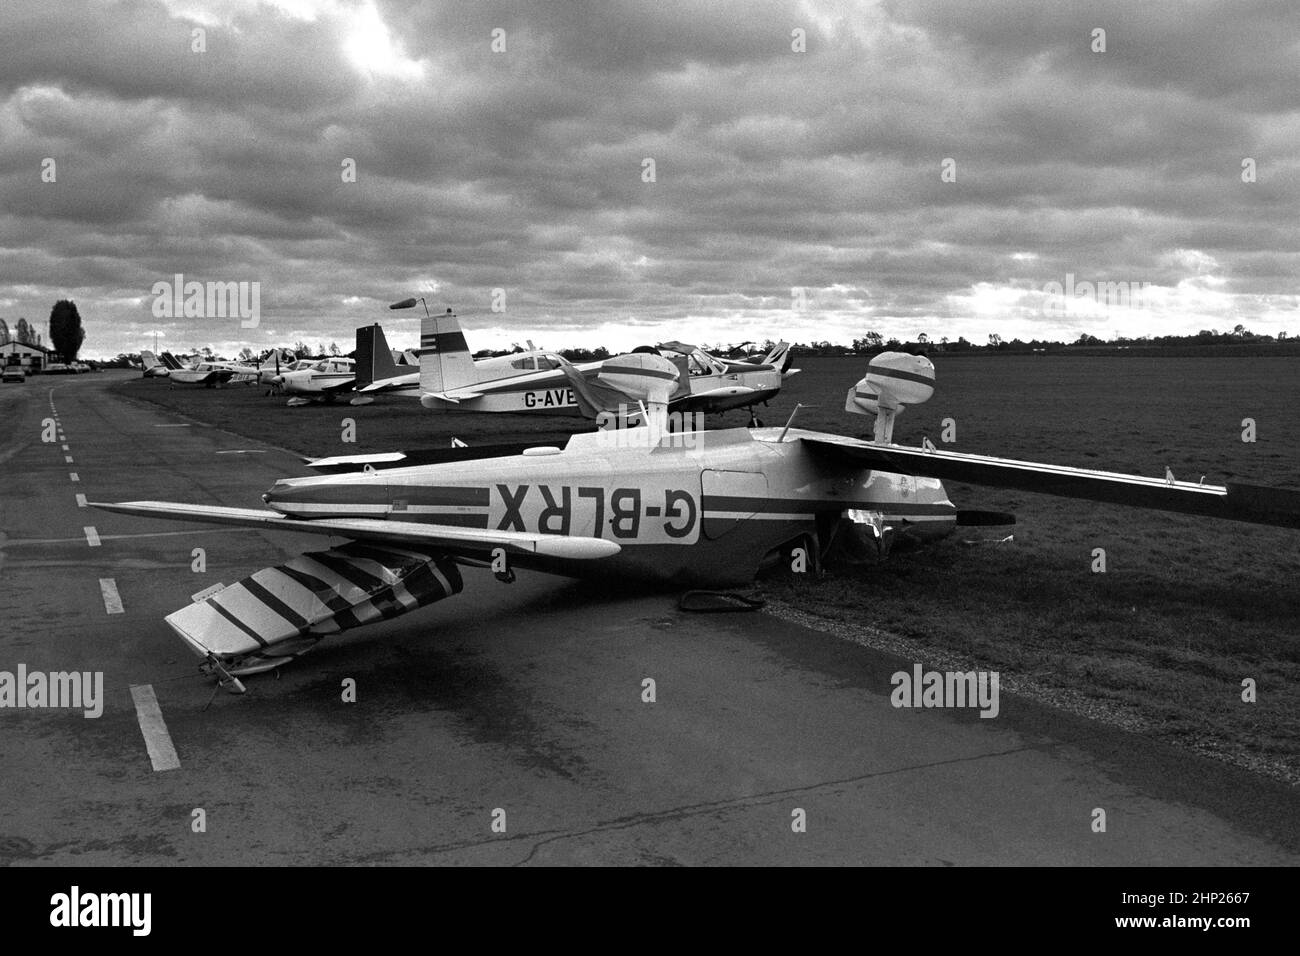 Foto di archivio datata 16/10/1987 di un aereo leggero capovolto la Grande tempesta del 1987, presso il campo aereo Stapleford Abbotts vicino Epping in Essex. Data di emissione: Venerdì 18 febbraio 2022. Foto Stock